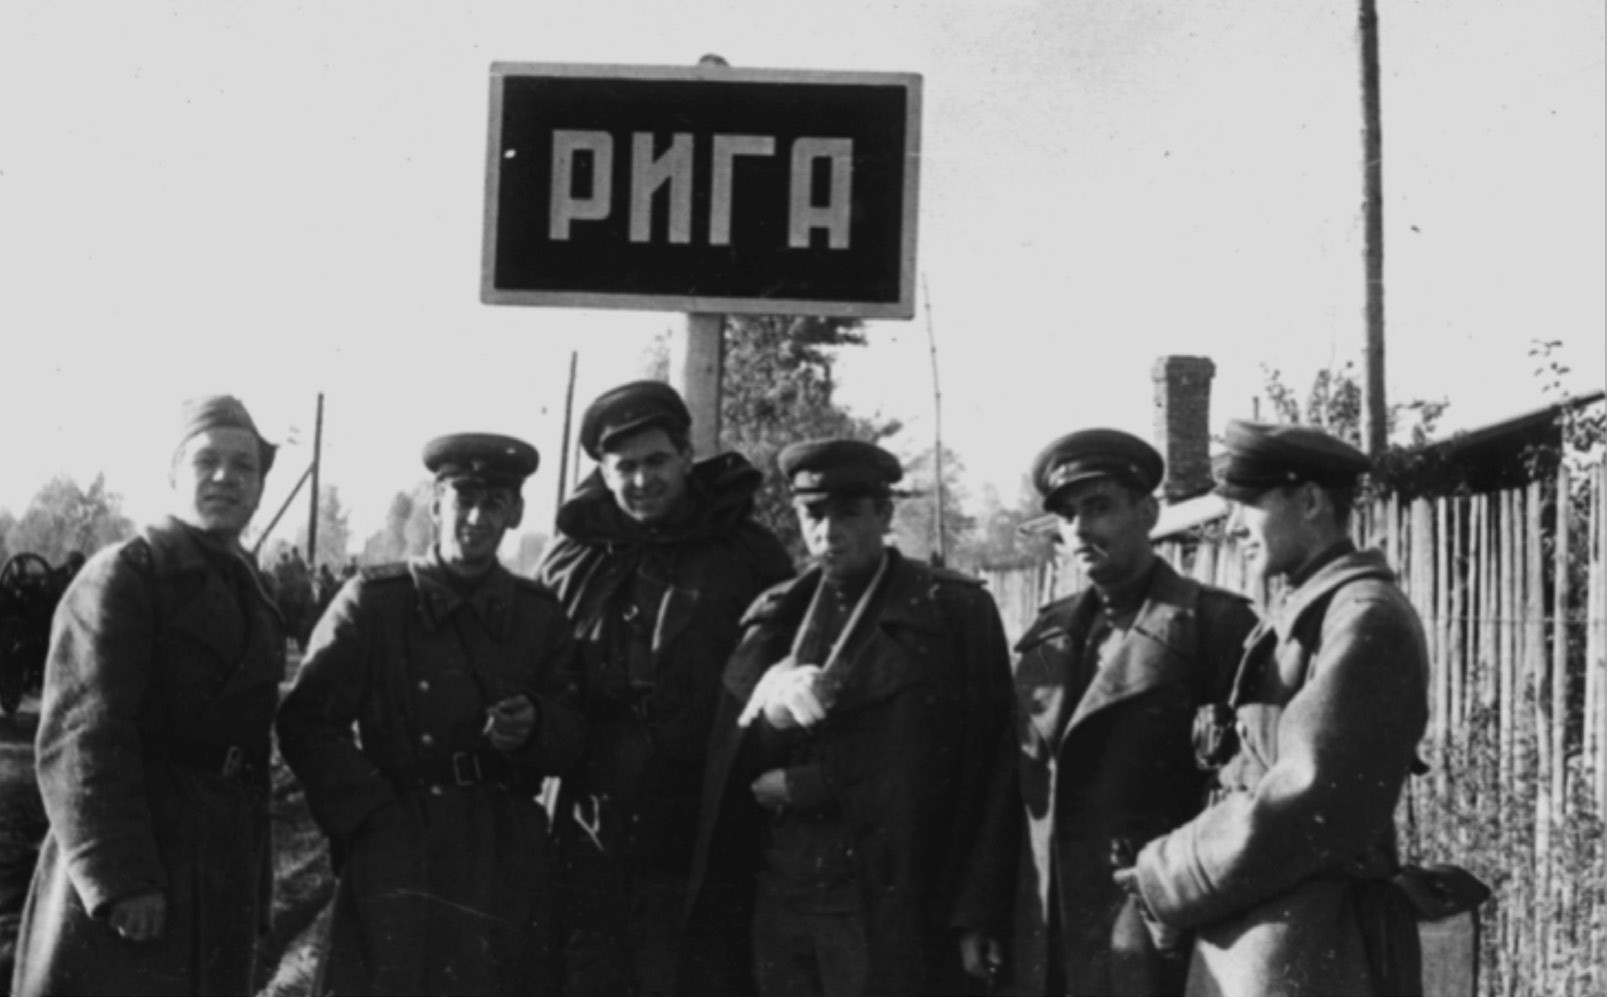 Киногруппа 3-го Балтийского фронта. На фото: оператор Л. Изаксон (второй слева), начальник фронтовой киногруппы Рафаил Гиков (второй справа). Фото из частного архива.